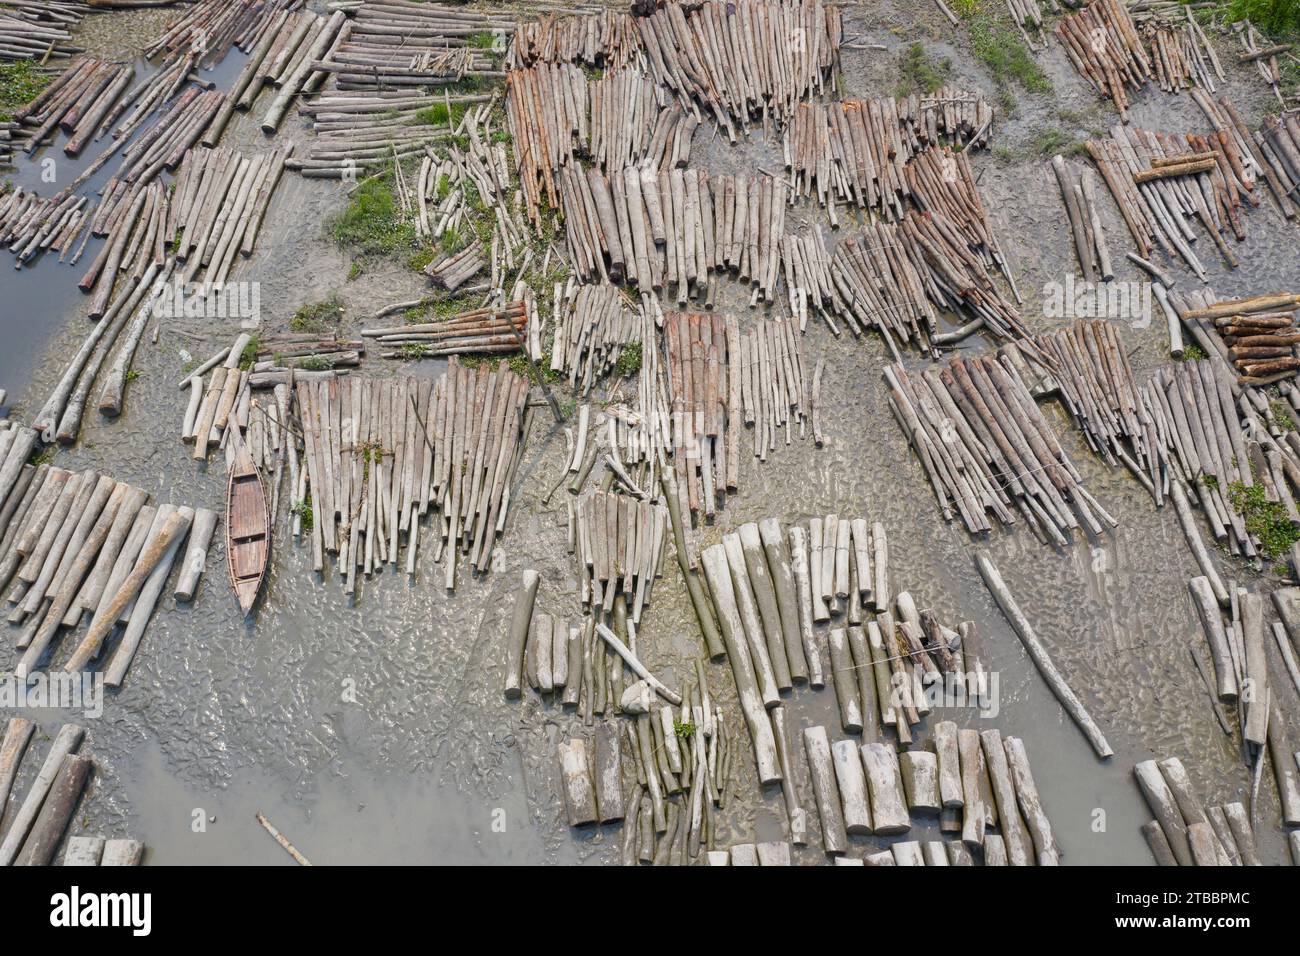 Pirojpur, Bangladesch: Am Ufer des Flusses Sandha bei Swarupkathi in Nesarabad upazila von Pirojpur werden riesige Mengen von Baumstämmen zum Verkauf gehalten. Stockfoto